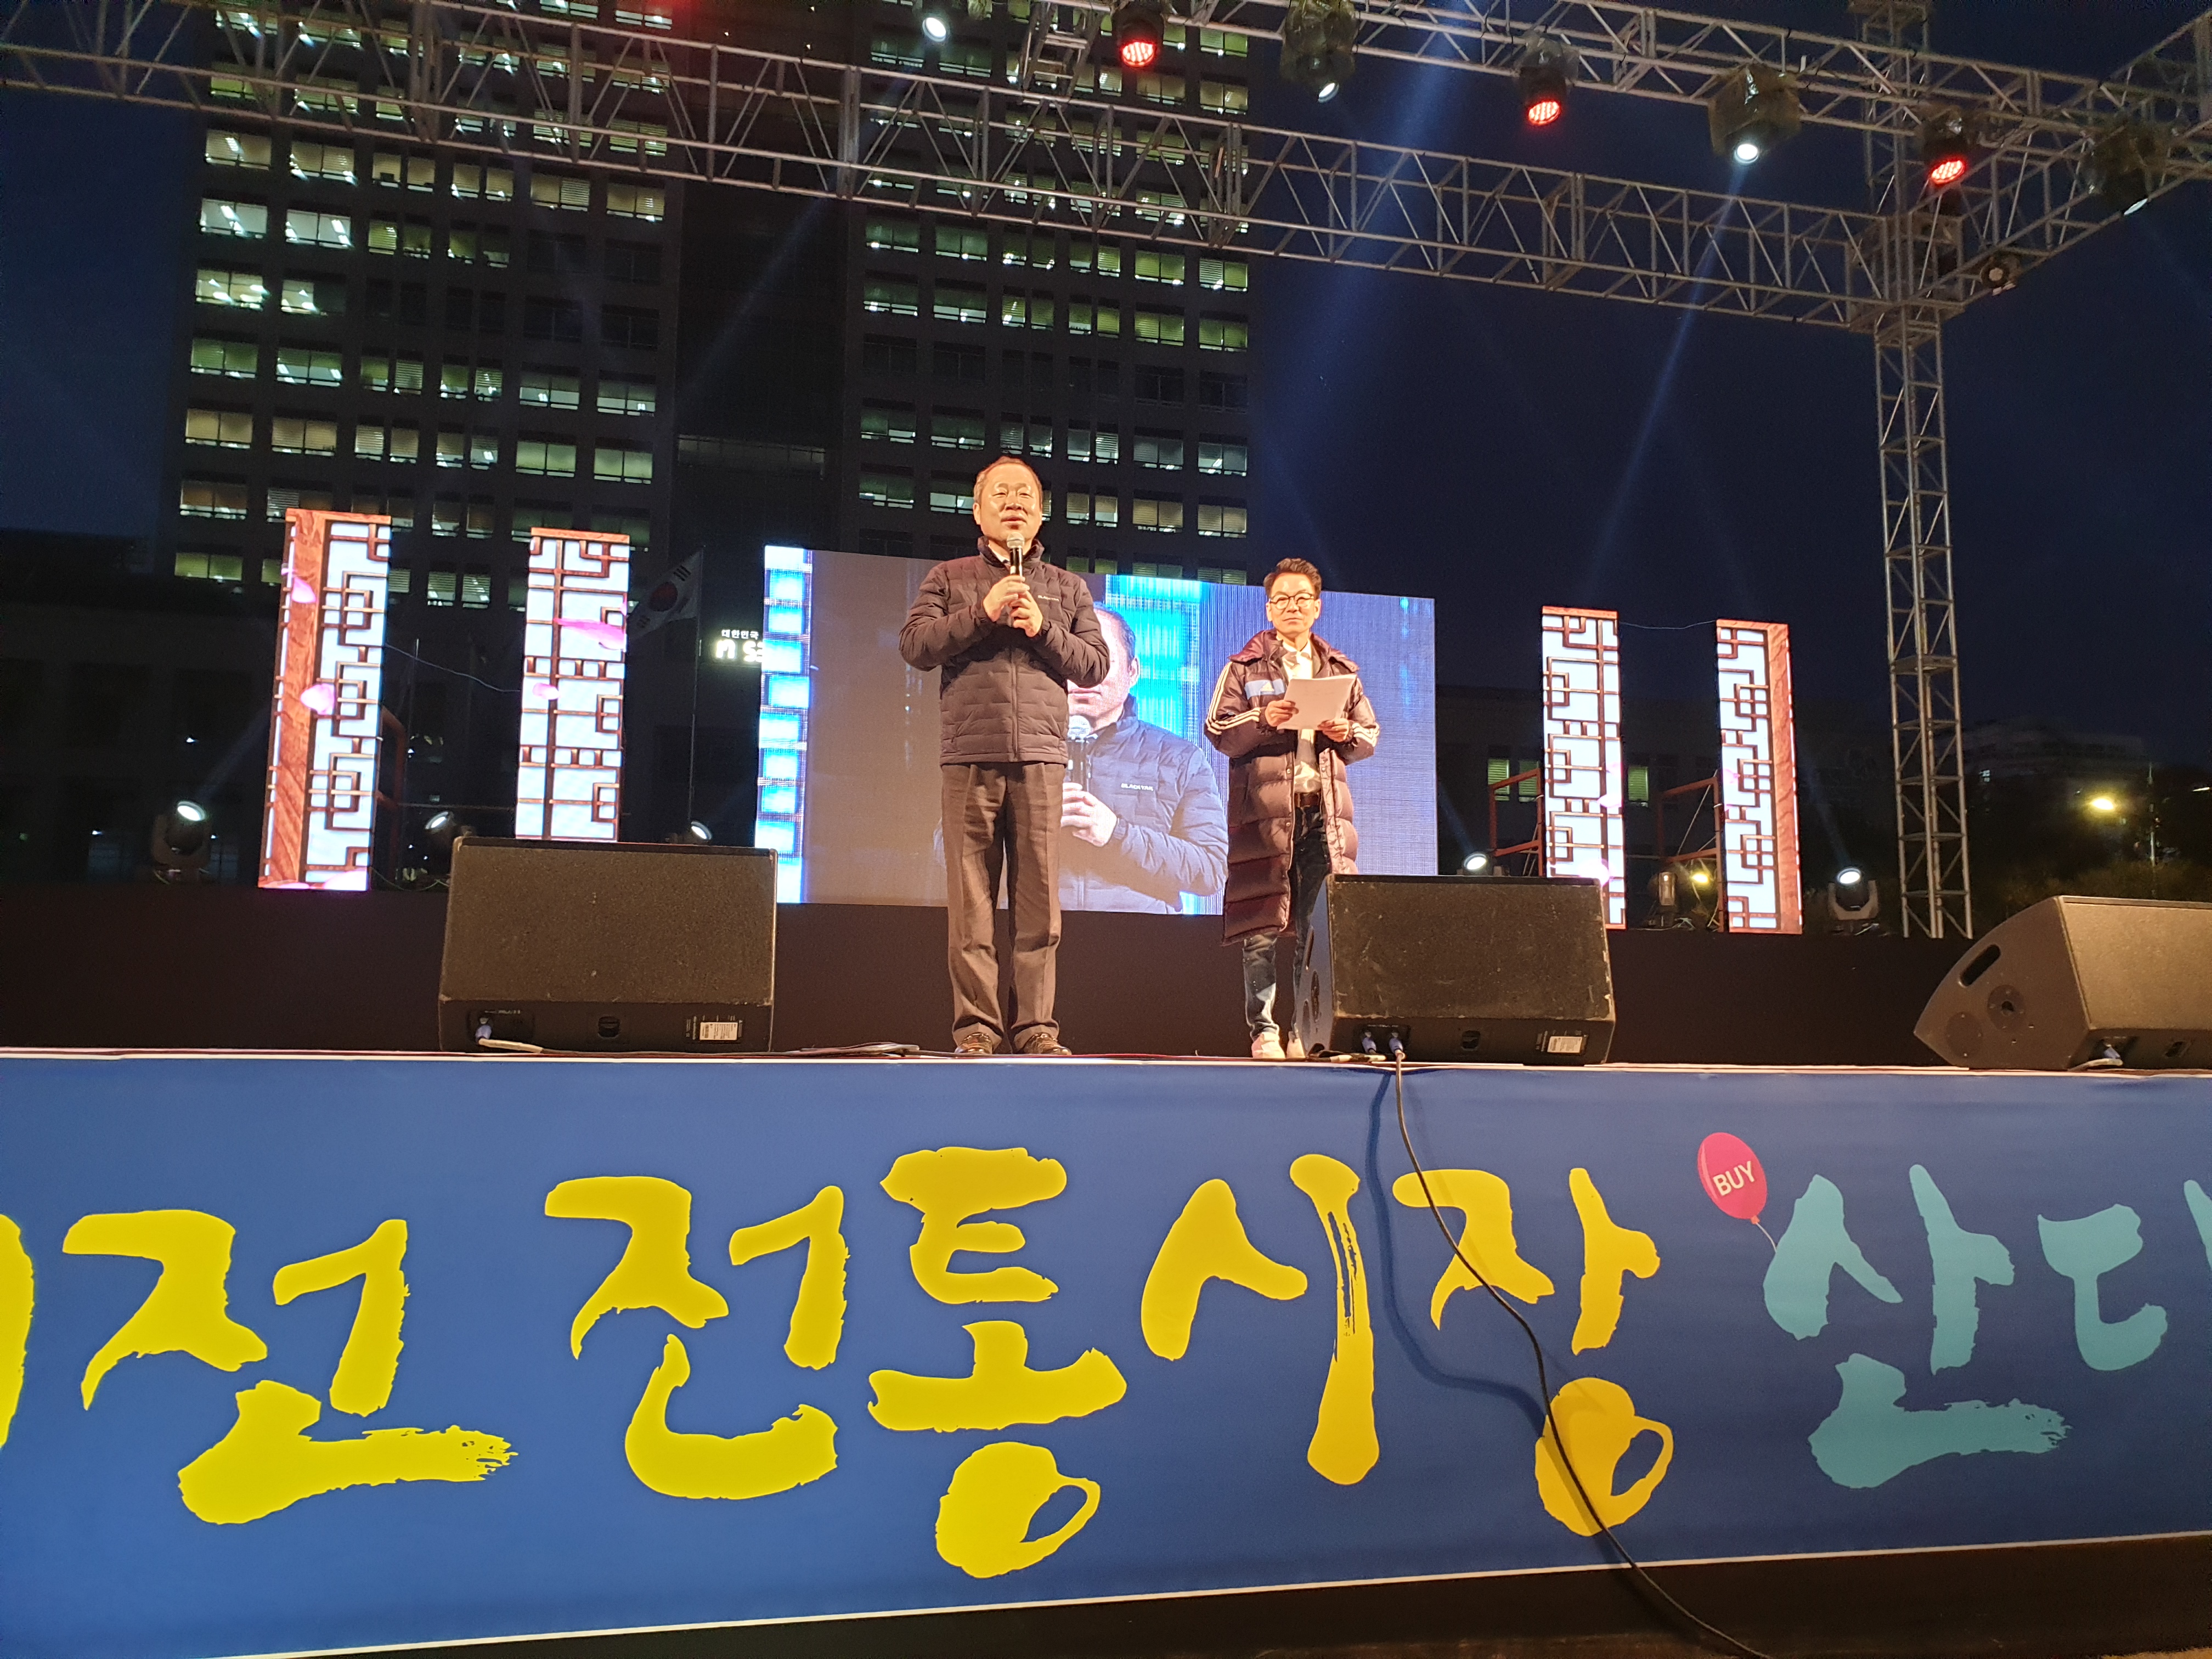 2019 대전지역상품전시회 "대전 전통시장 산다 대축제" - 셋째날, 폐막식